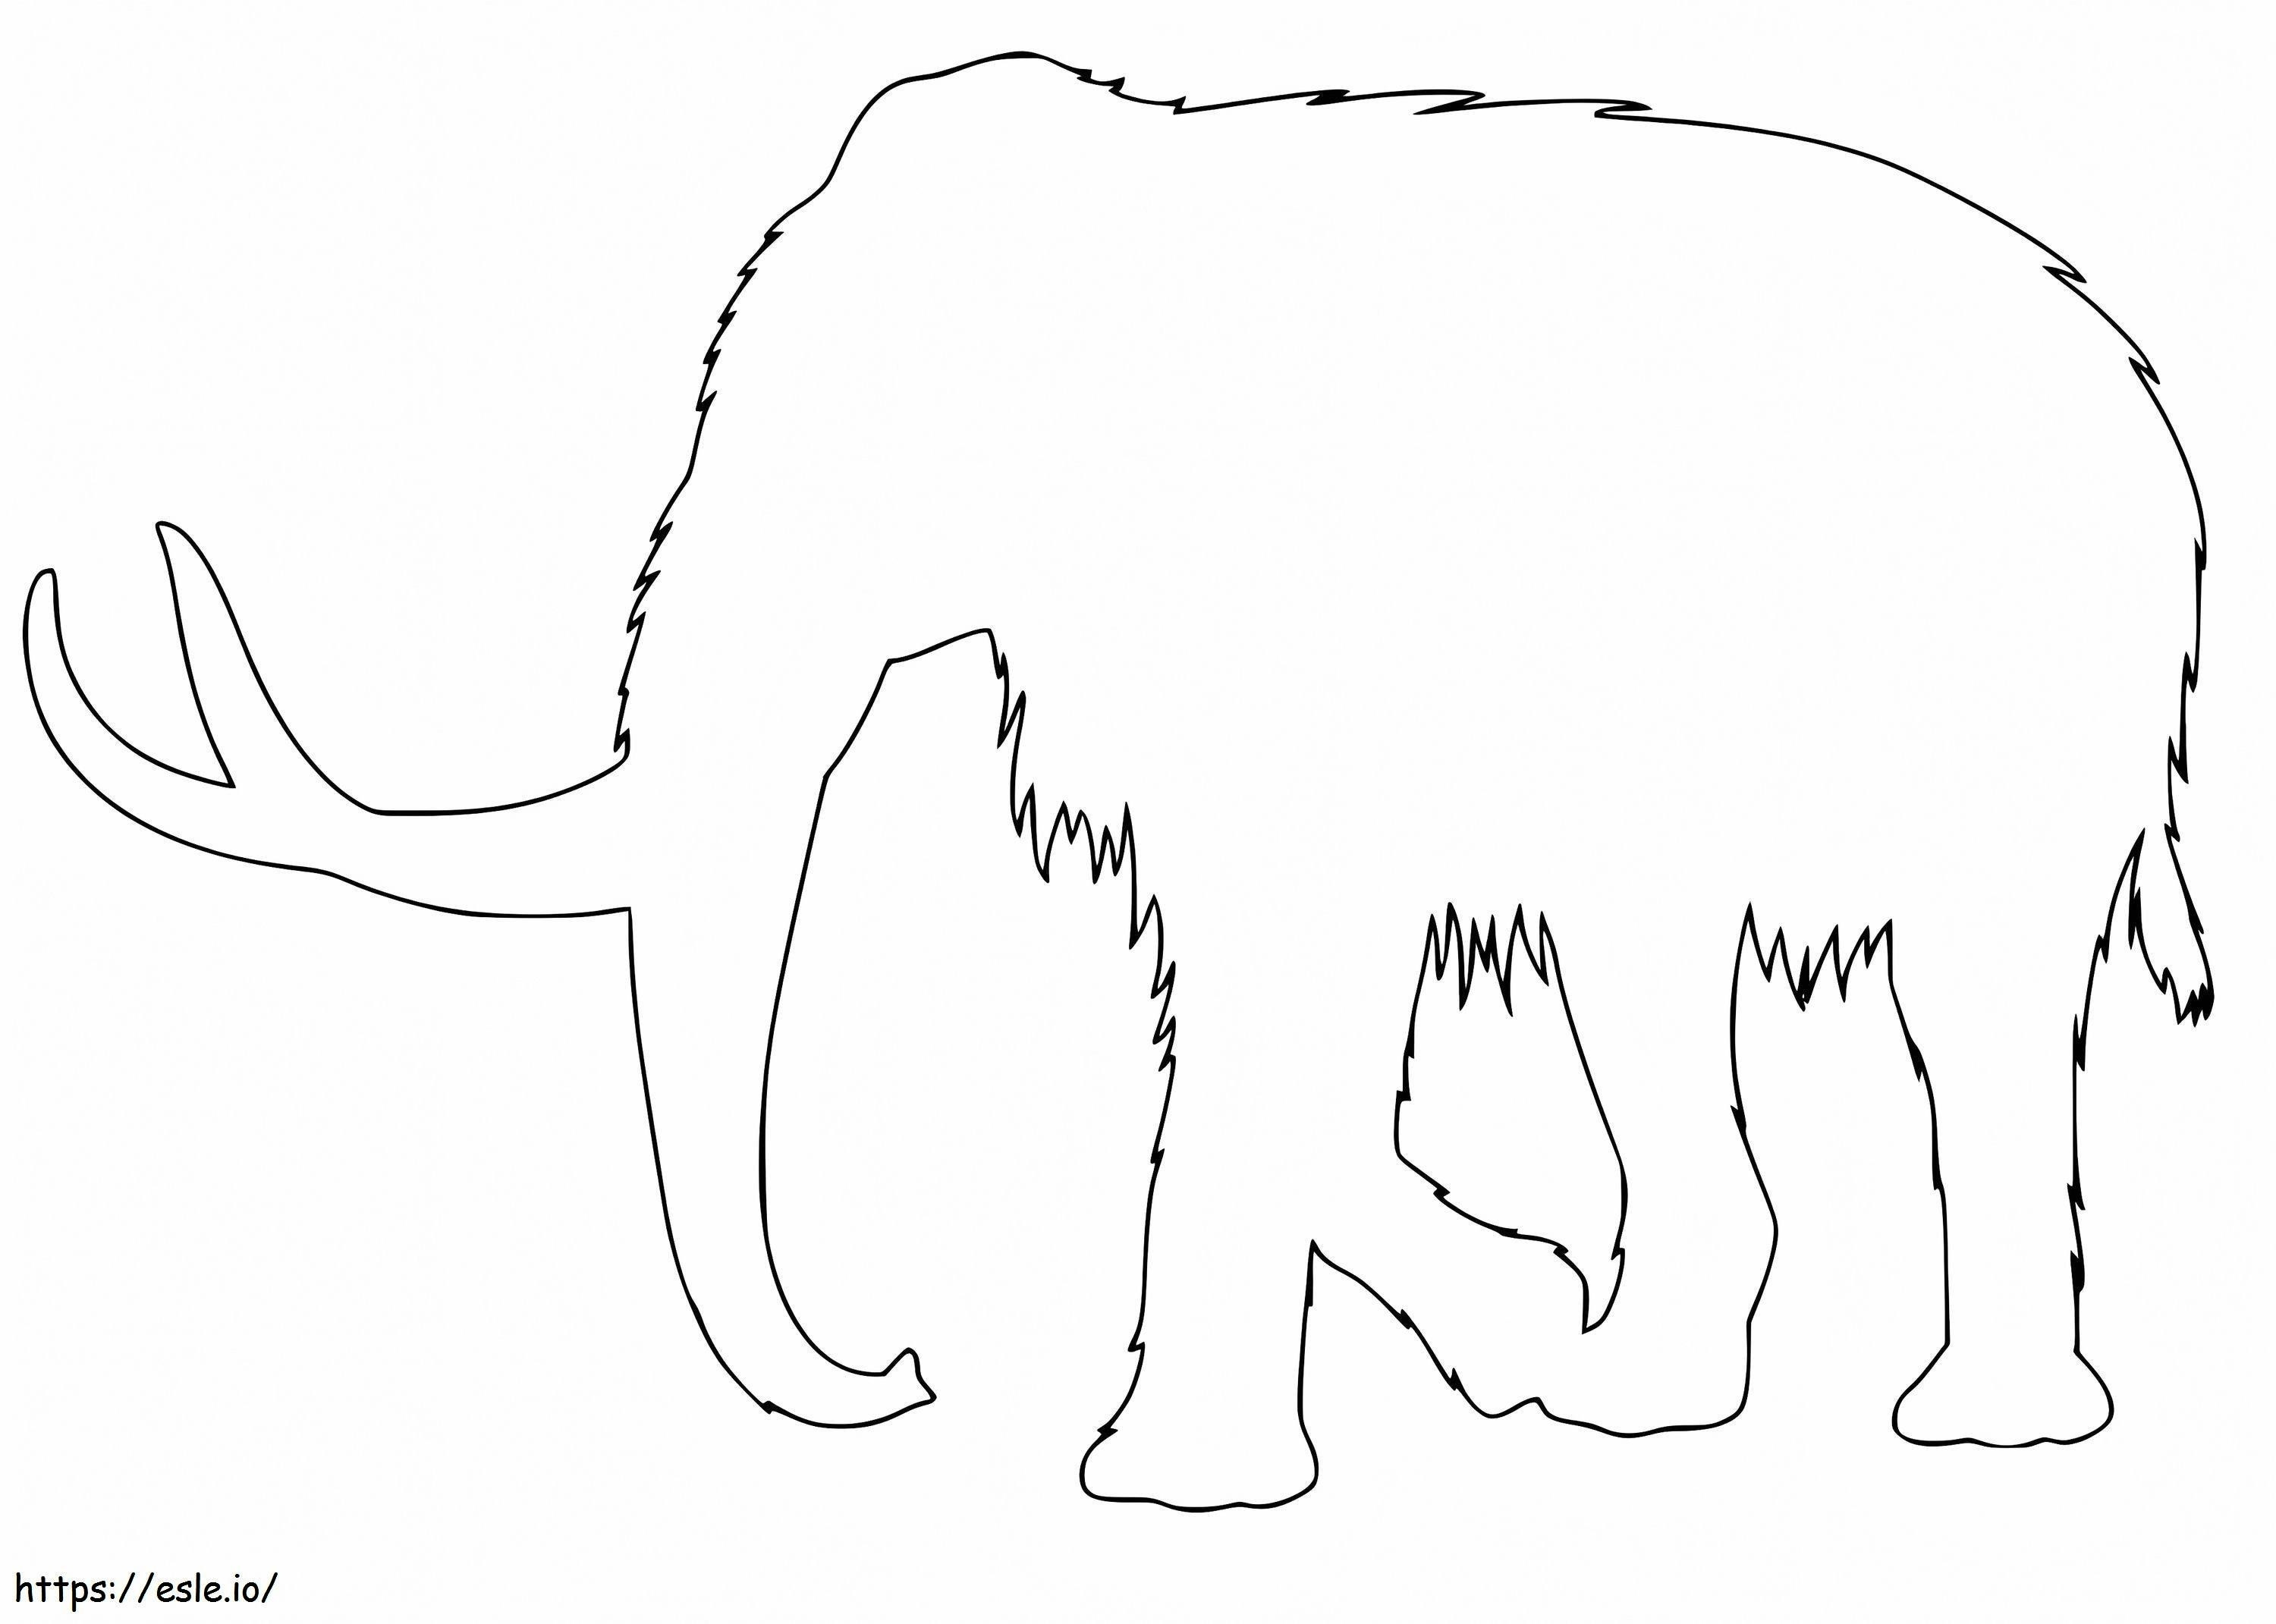 Contorno Mammut da colorare